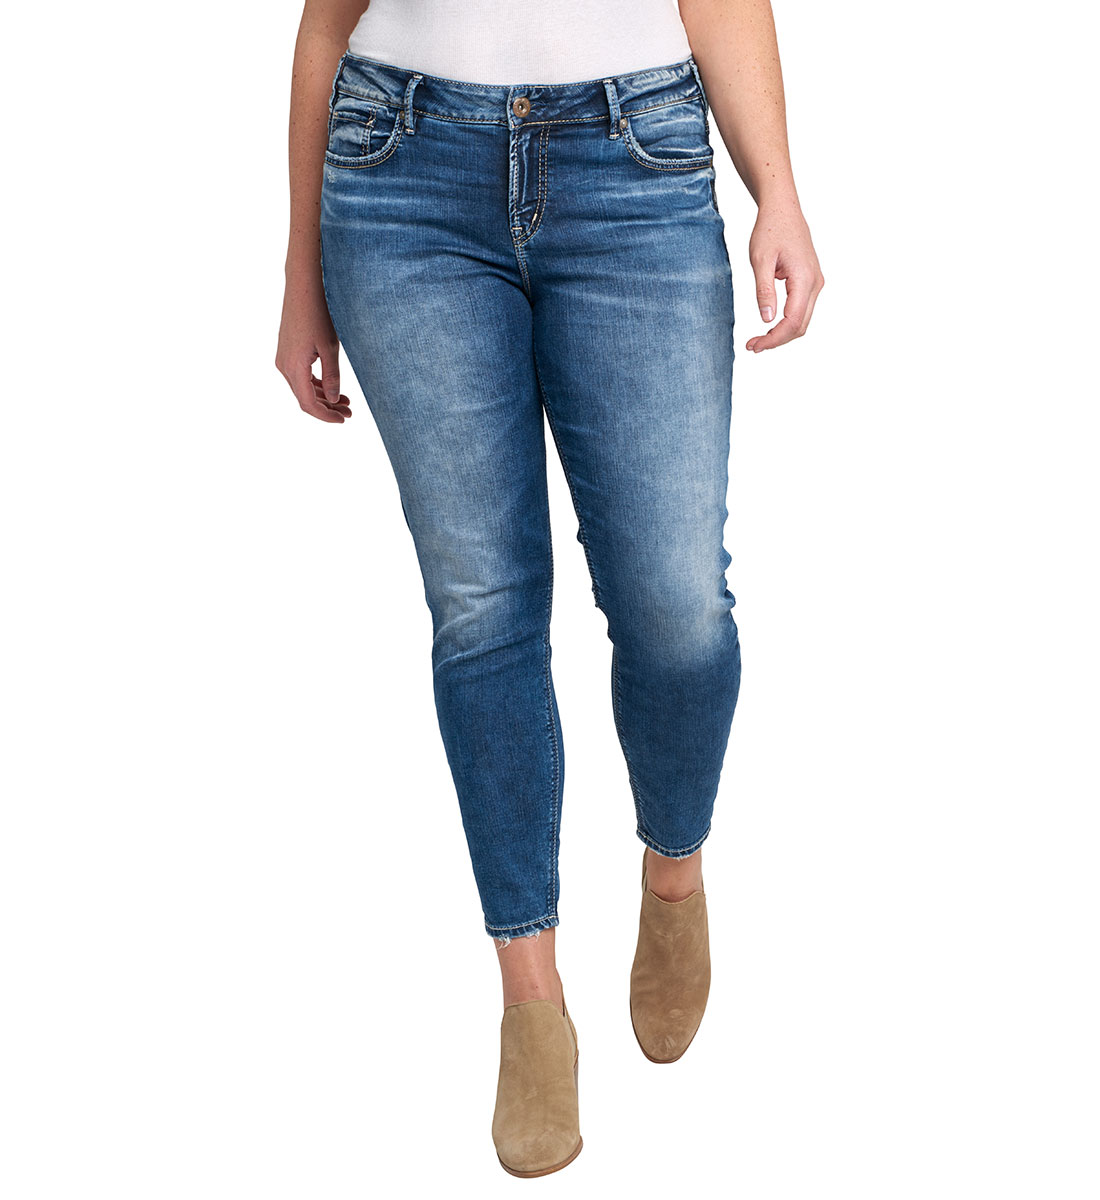 annie girlfriend jeans